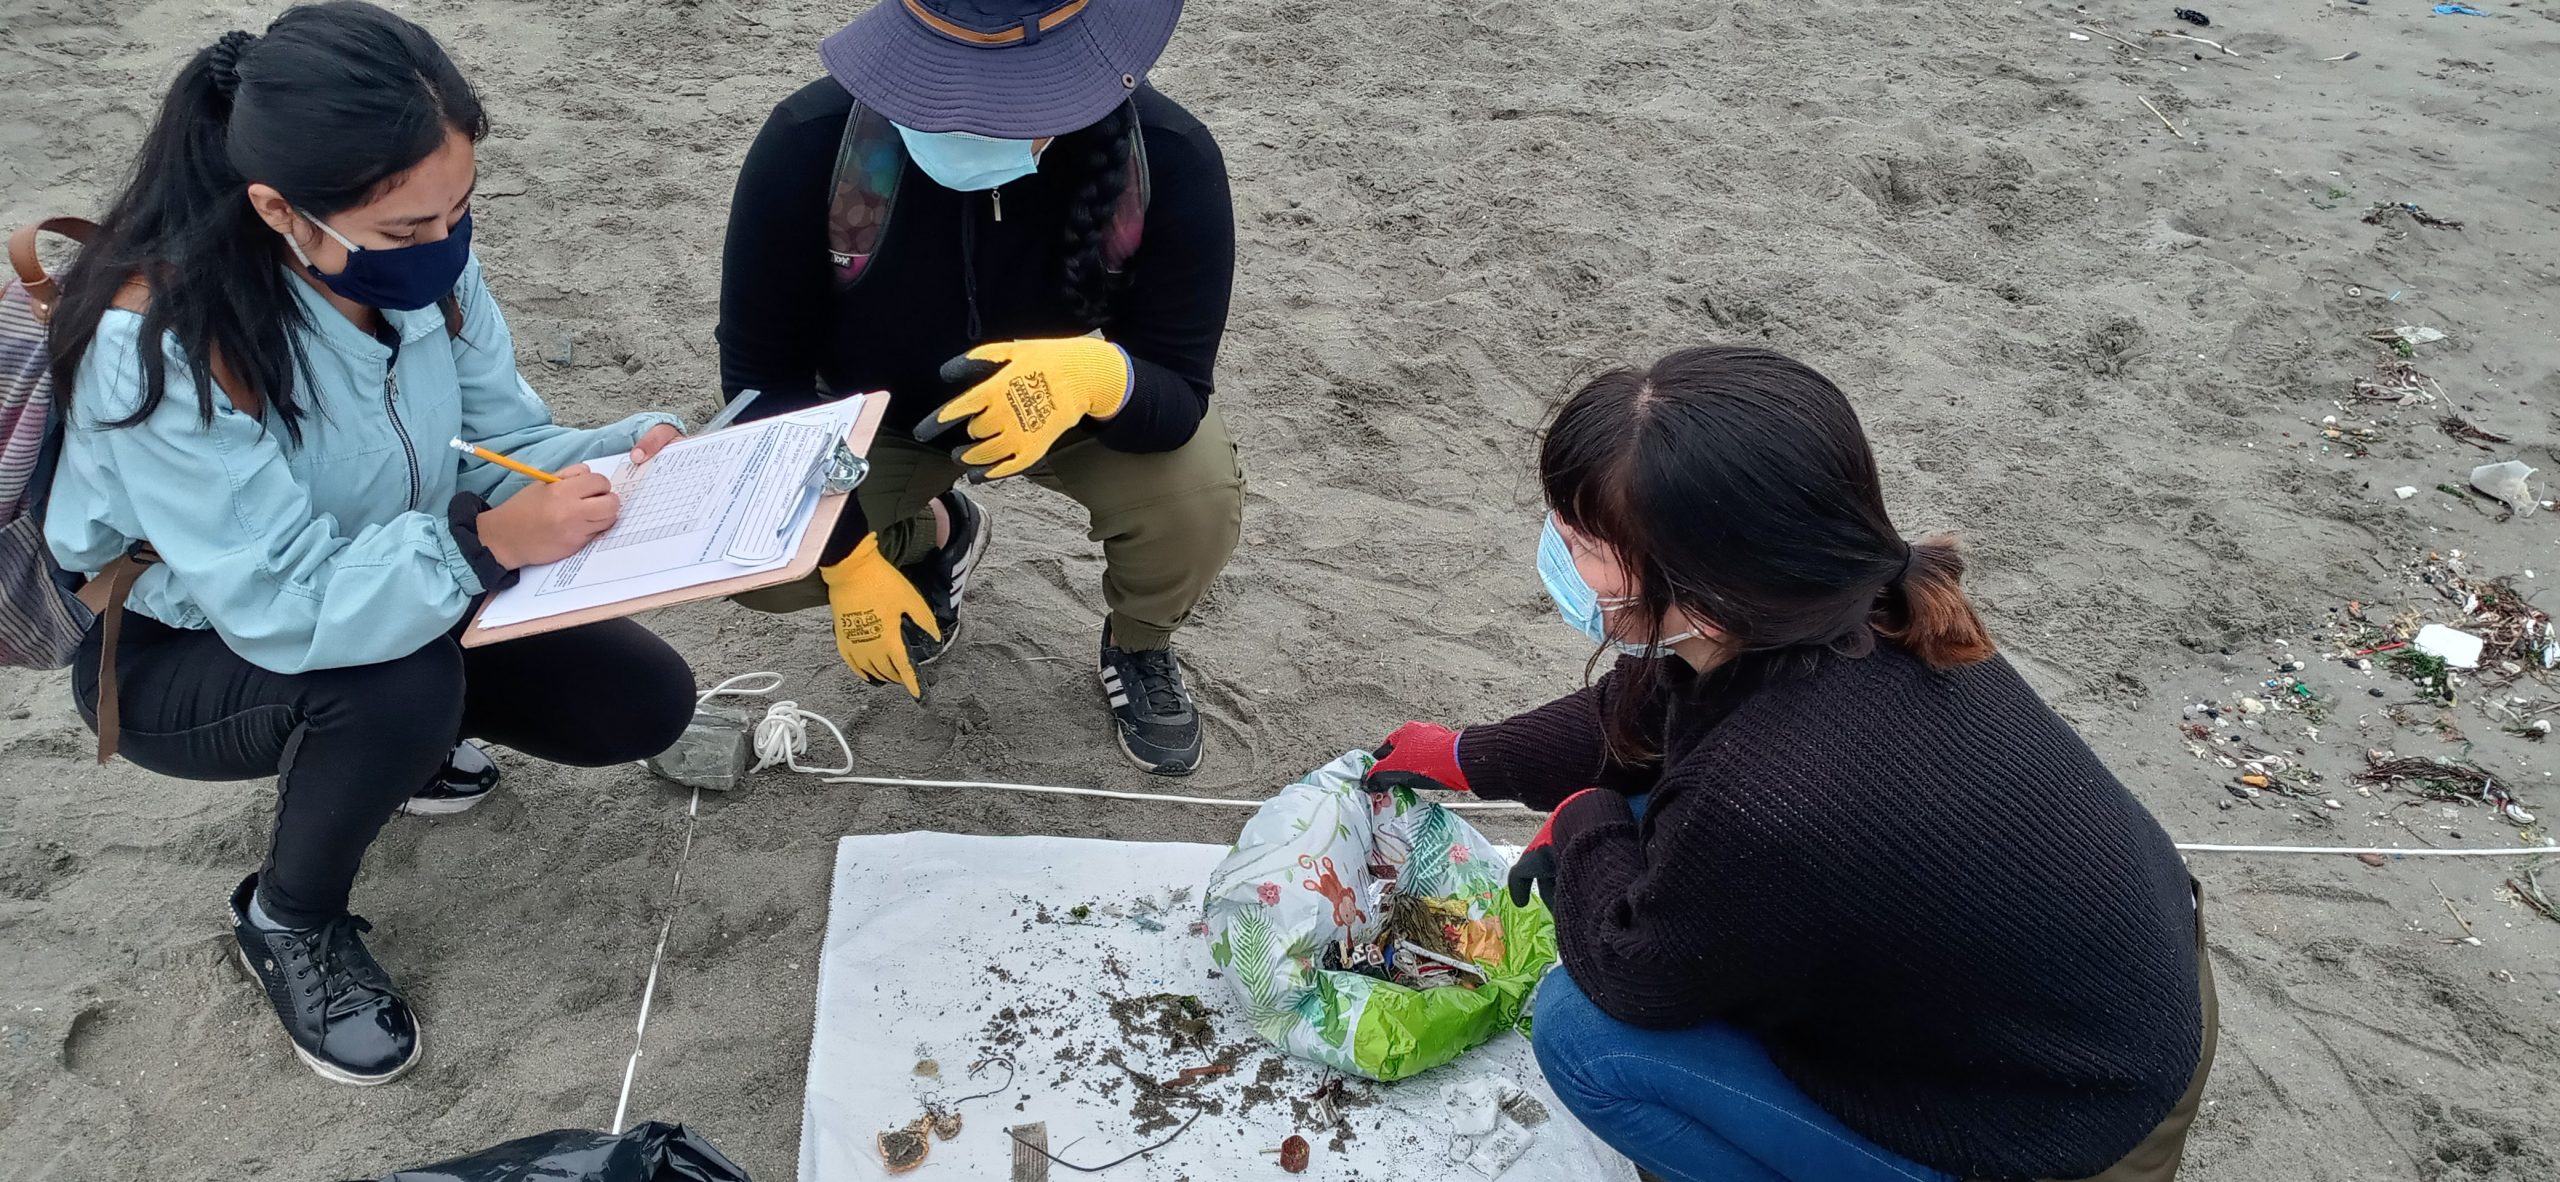 Programa de ciencia ciudadana convoca a voluntarios para investigar la basura marina